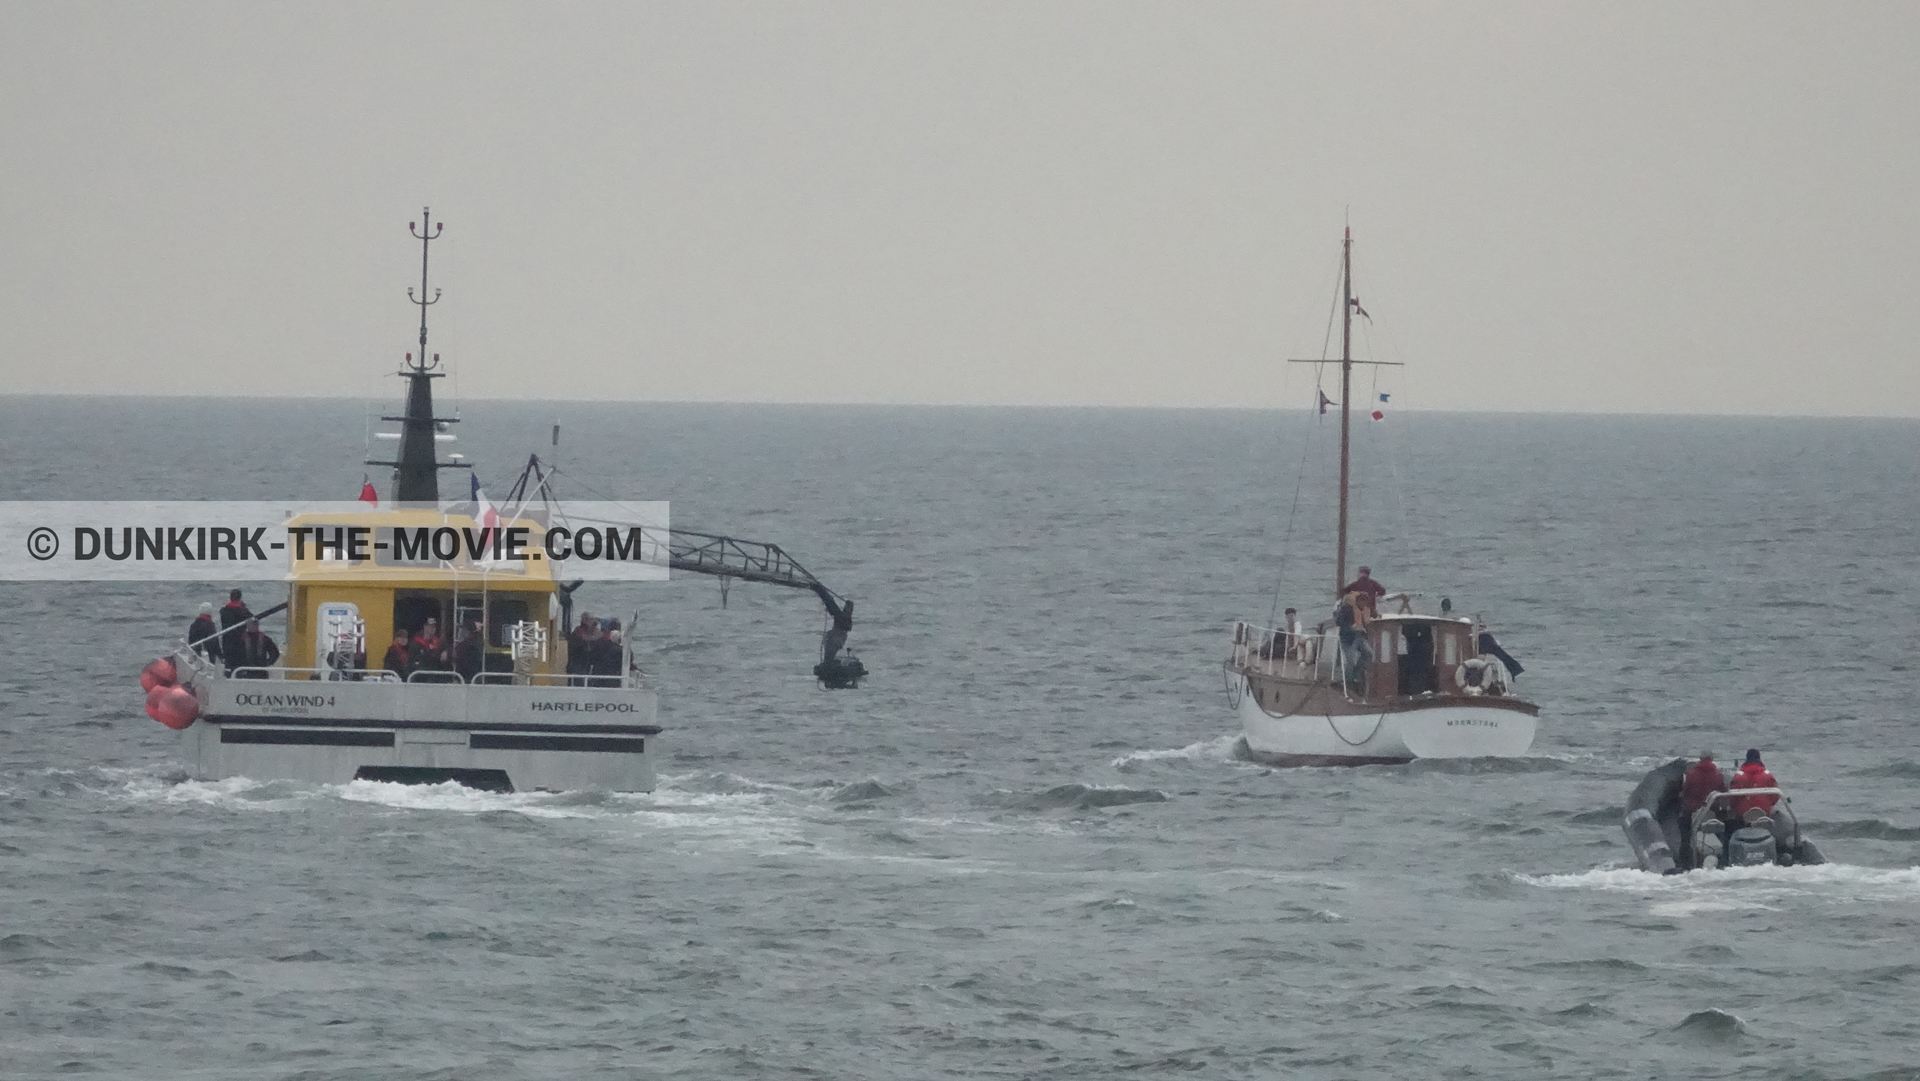 Fotos con actor, barco, cielo gris, mares calma, Ocean Wind 4, zodiaco, Moonstone,  durante el rodaje de la película Dunkerque de Nolan